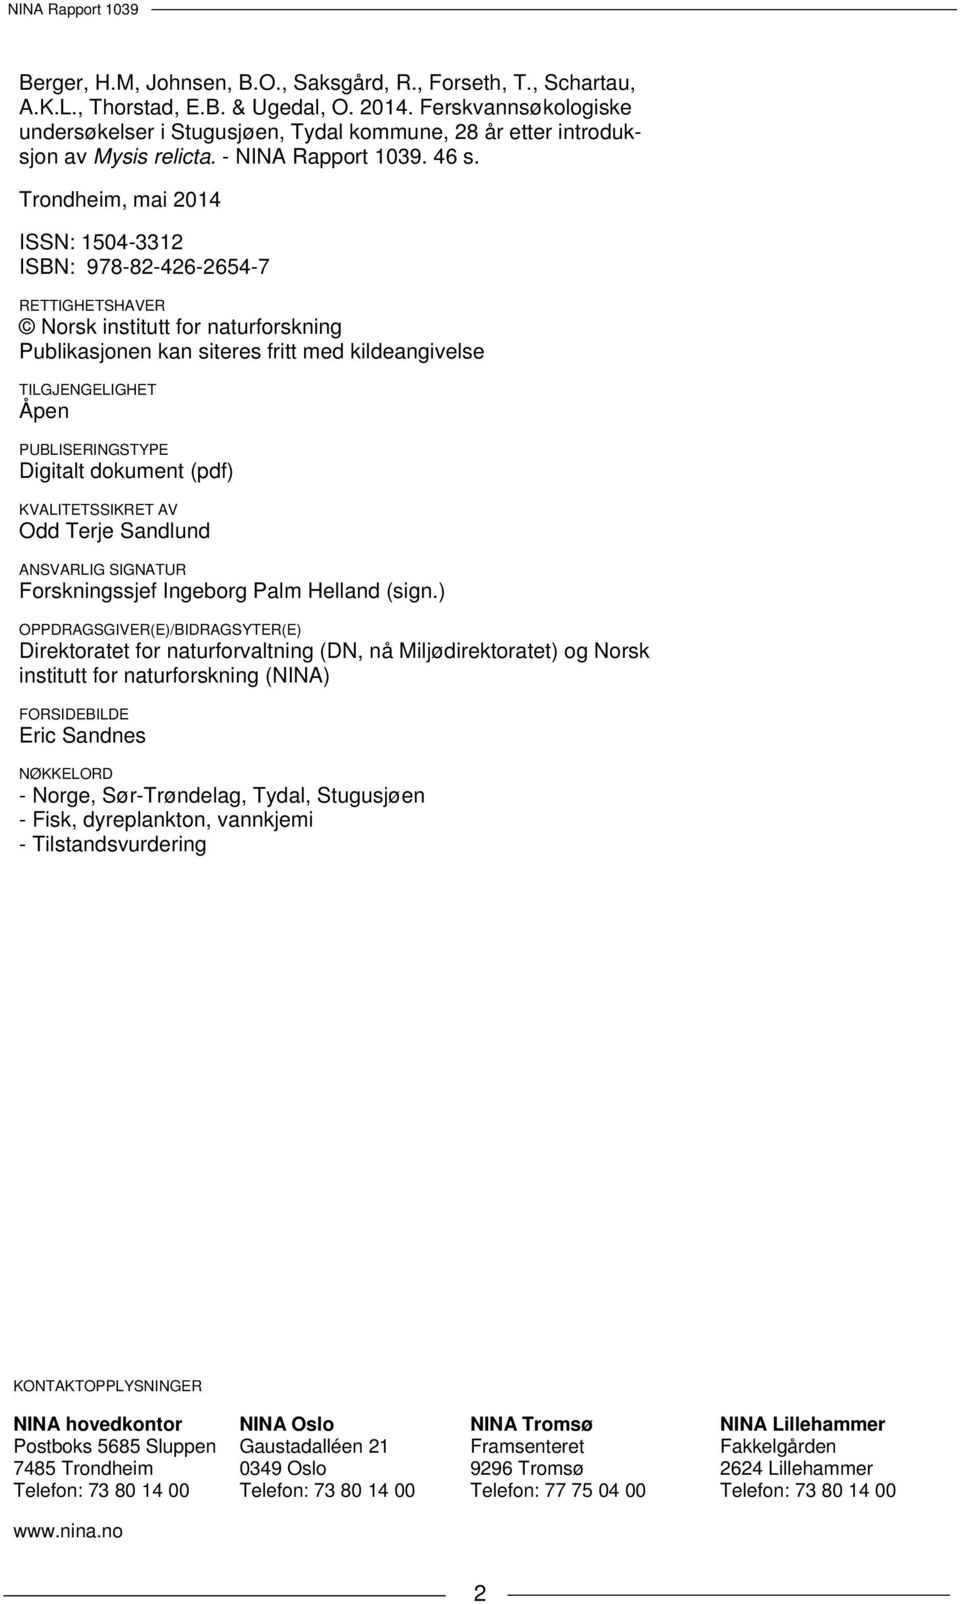 Trondheim, mai 2014 ISSN: 1504-3312 ISBN: 978-82-426-2654-7 RETTIGHETSHAVER Norsk institutt for naturforskning Publikasjonen kan siteres fritt med kildeangivelse TILGJENGELIGHET Åpen PUBLISERINGSTYPE